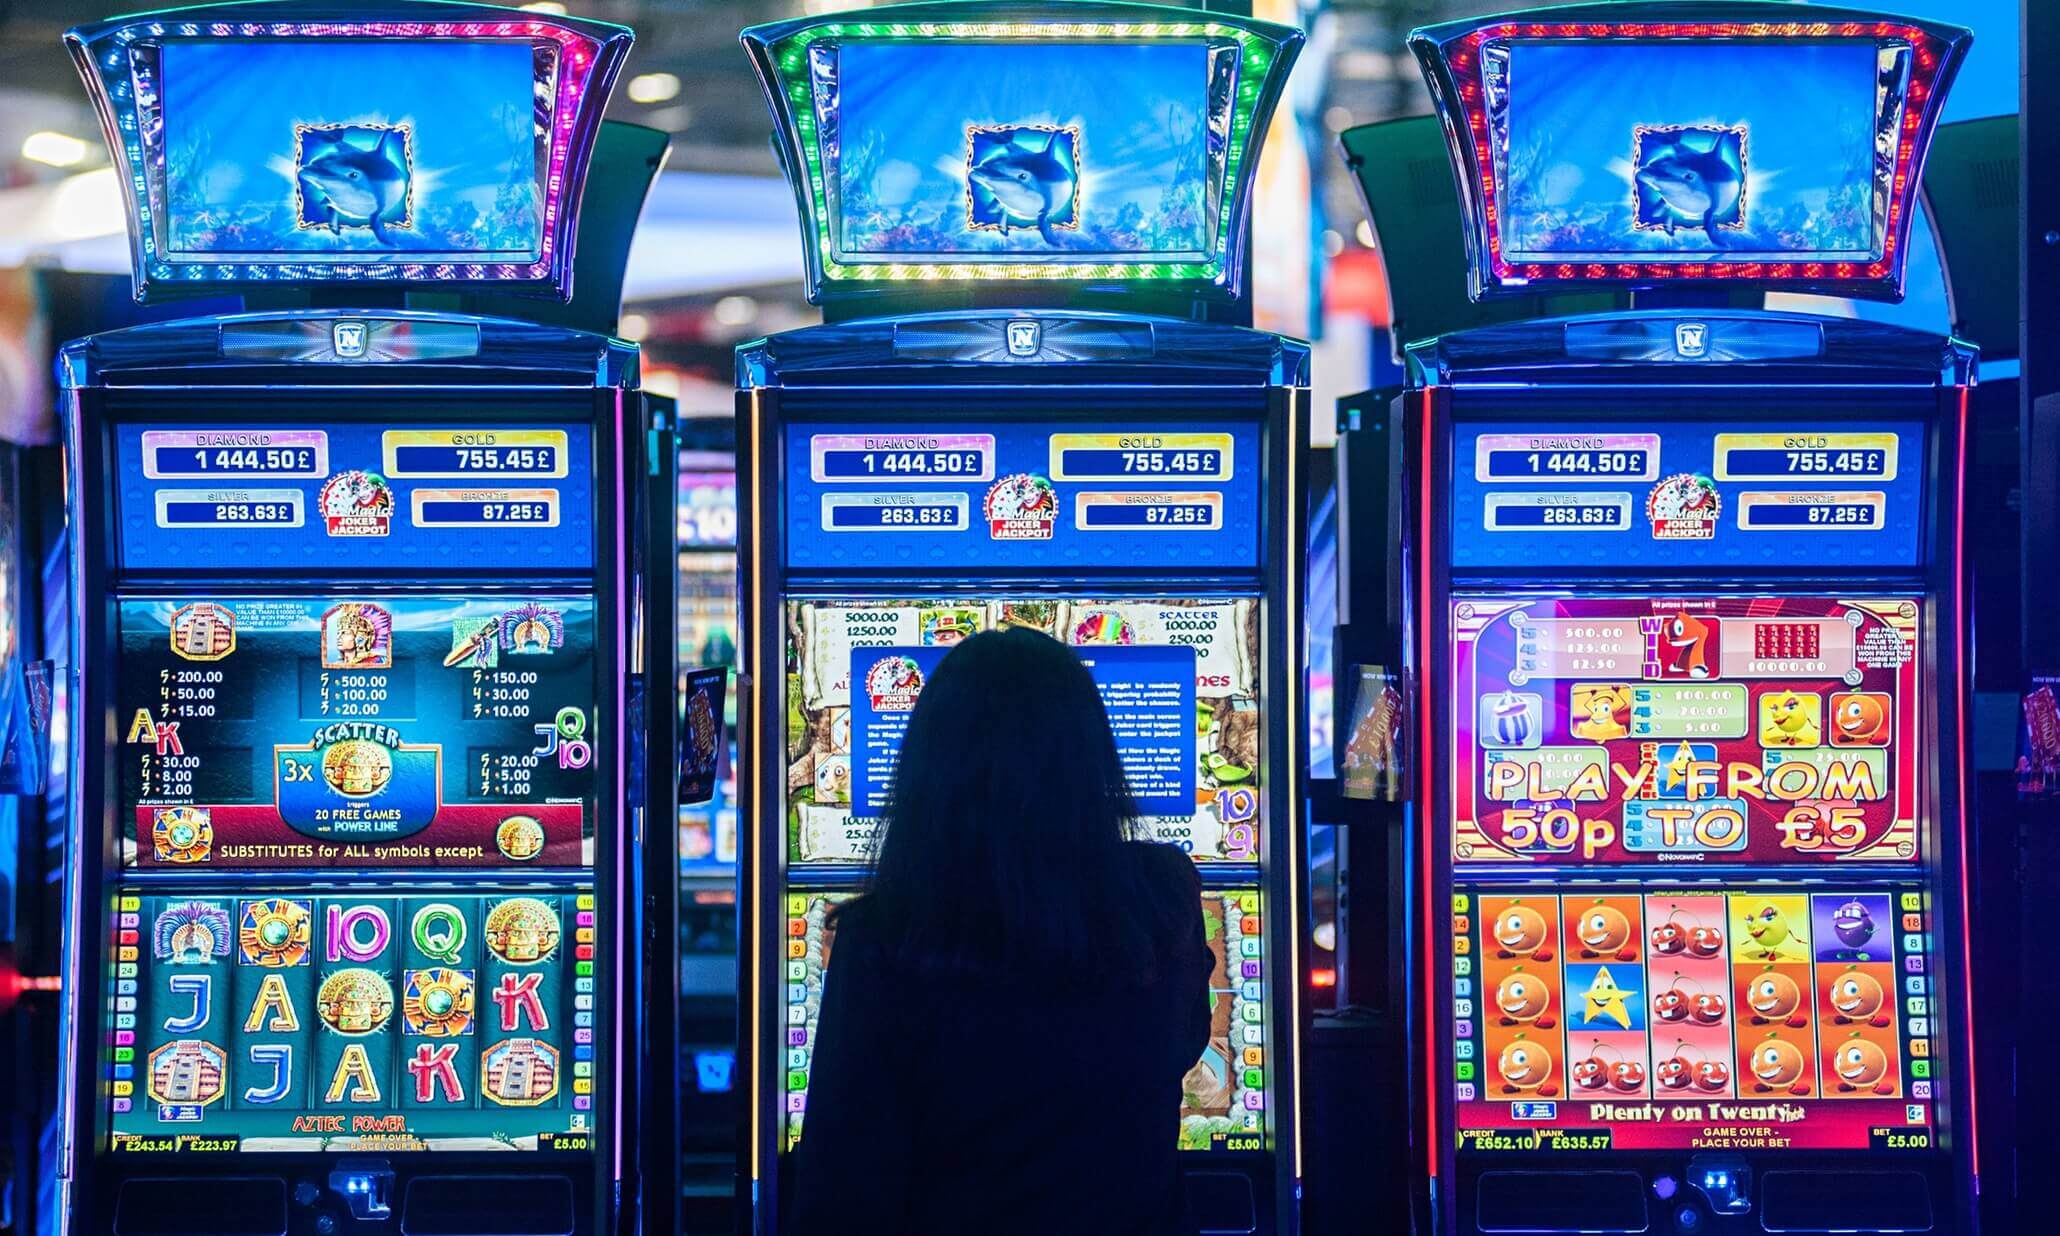 Игровые автоматы 2016 бесплатно ограбление казино фильм 2012 смотреть онлайн 1080